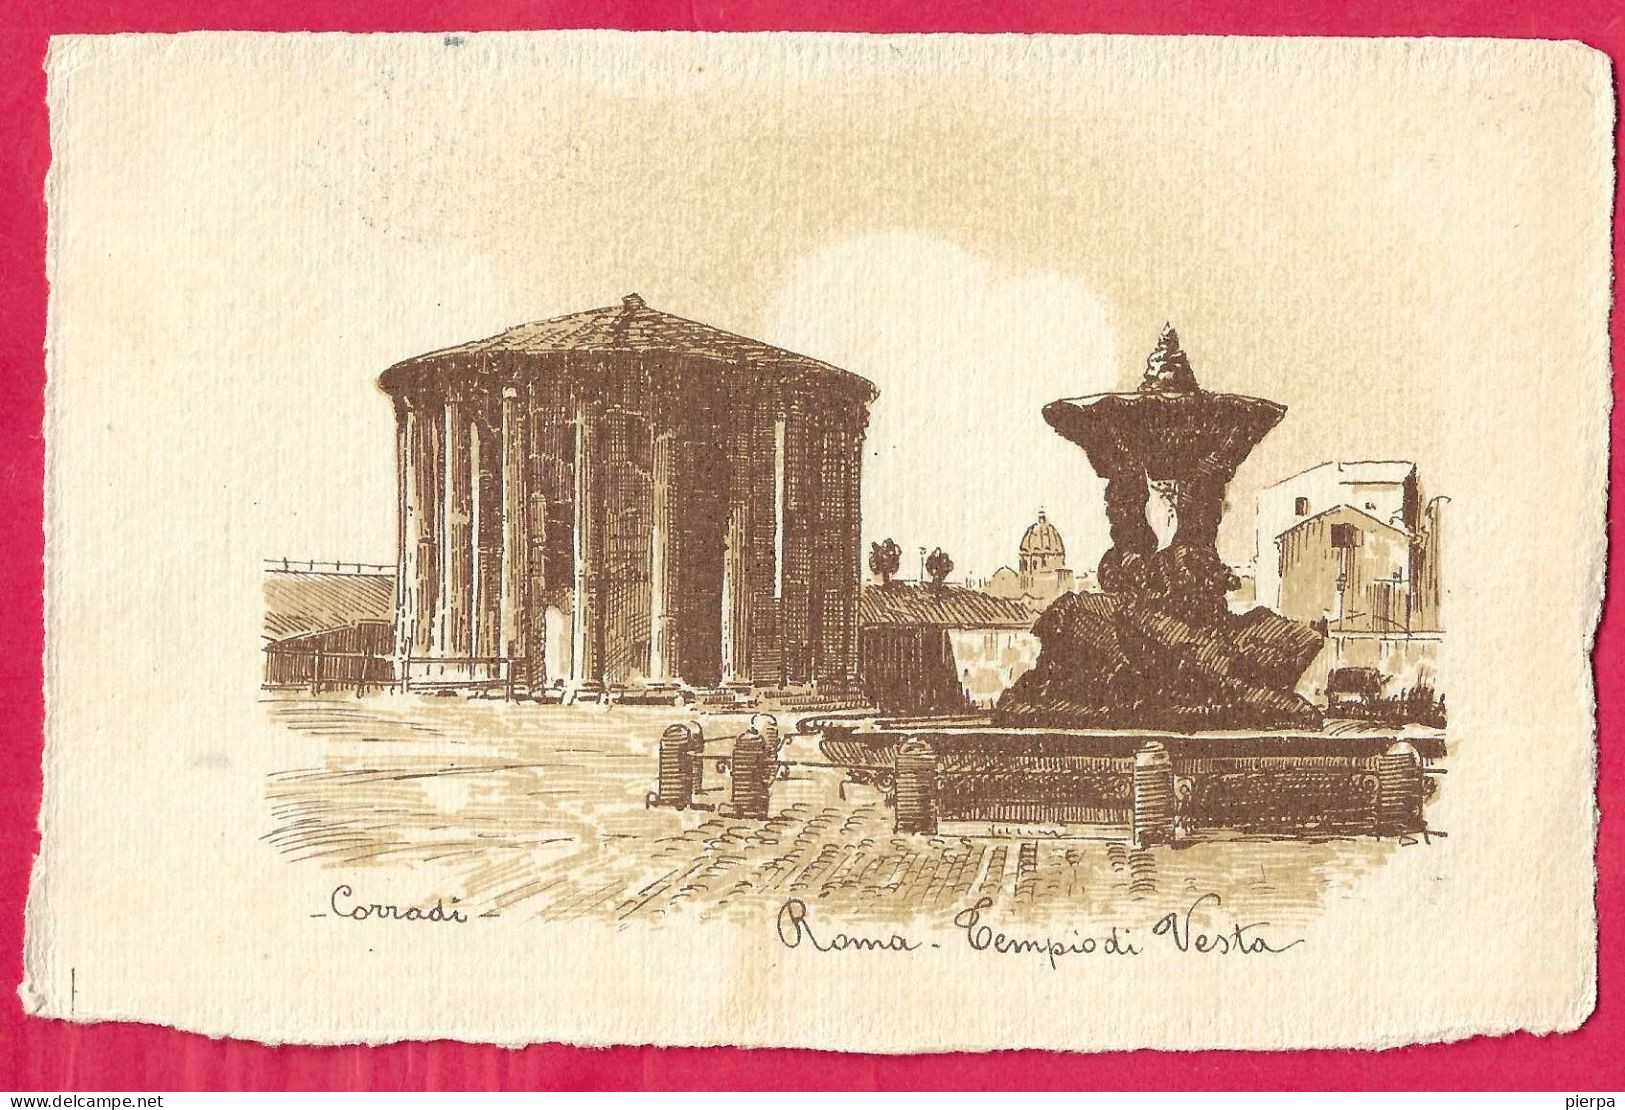 ROMA - TEMPIO DI VESTA - DIS. CORRADI - FORMATO PICCOLO - EDIZIONE VIRTUANI - VIAGGIATA 1918 - Other Monuments & Buildings